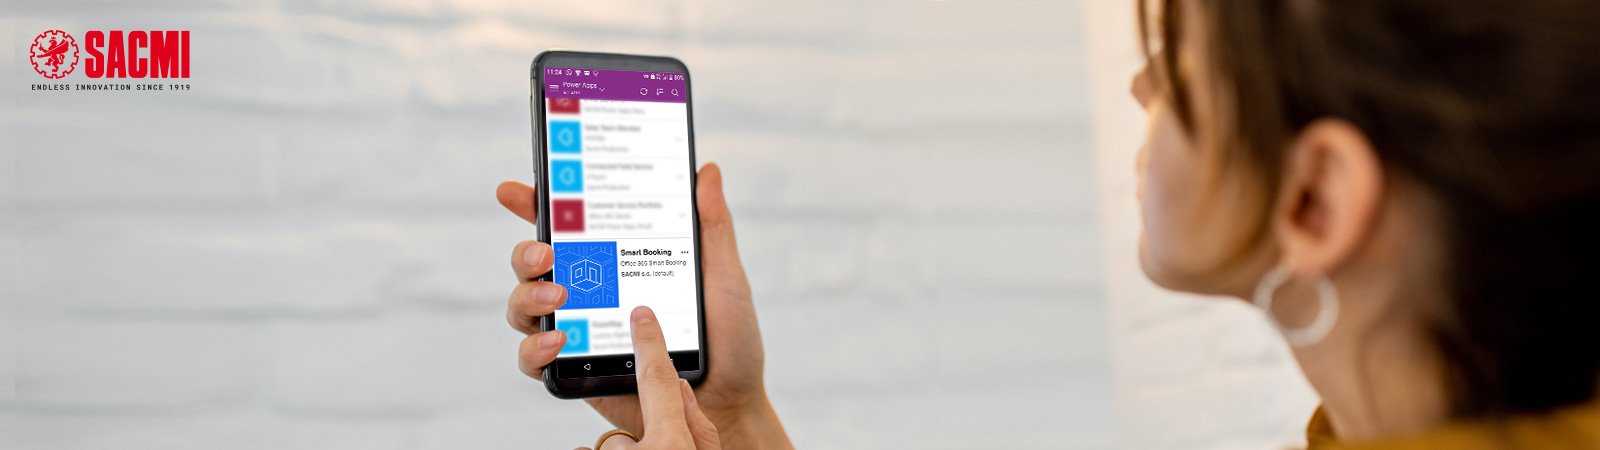 SACMI Smart Booking, <br>l’app digitale per la sicurezza del lavoro ai tempi del Covid</br>